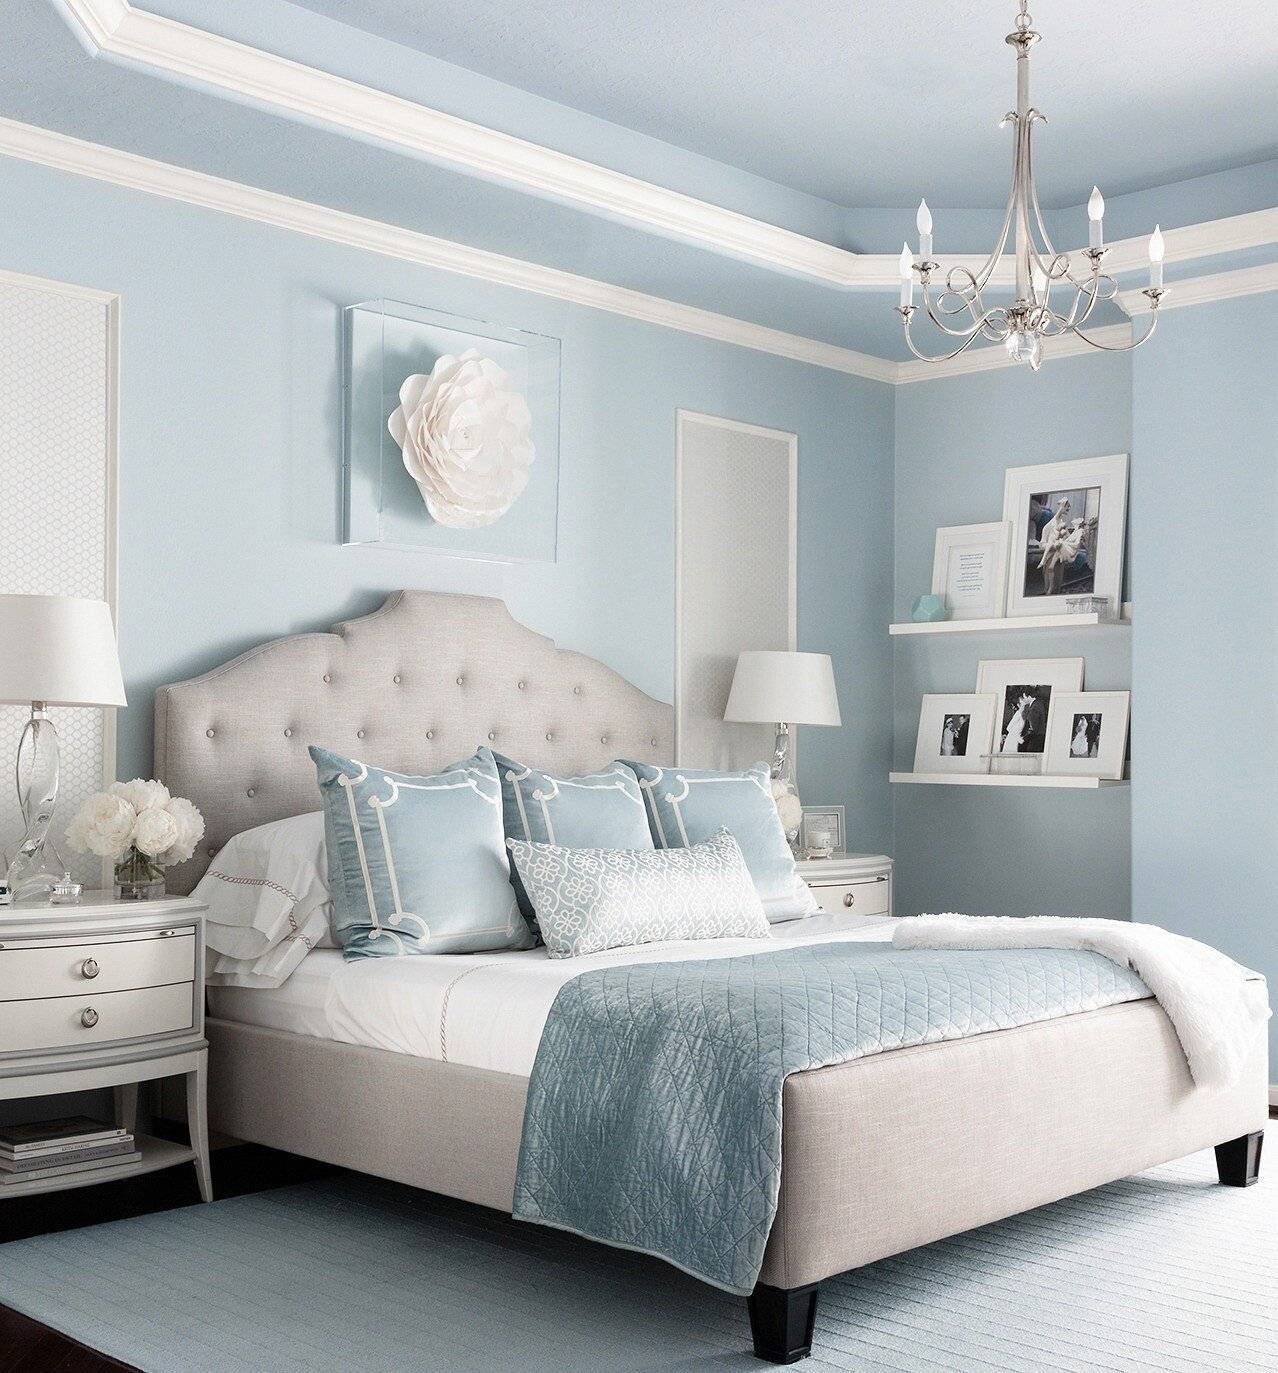 Бирюзовая спальня: 70 идей дизайна, ремонт и отделка, бирюзовый цвет в интерьере спальни (фото)